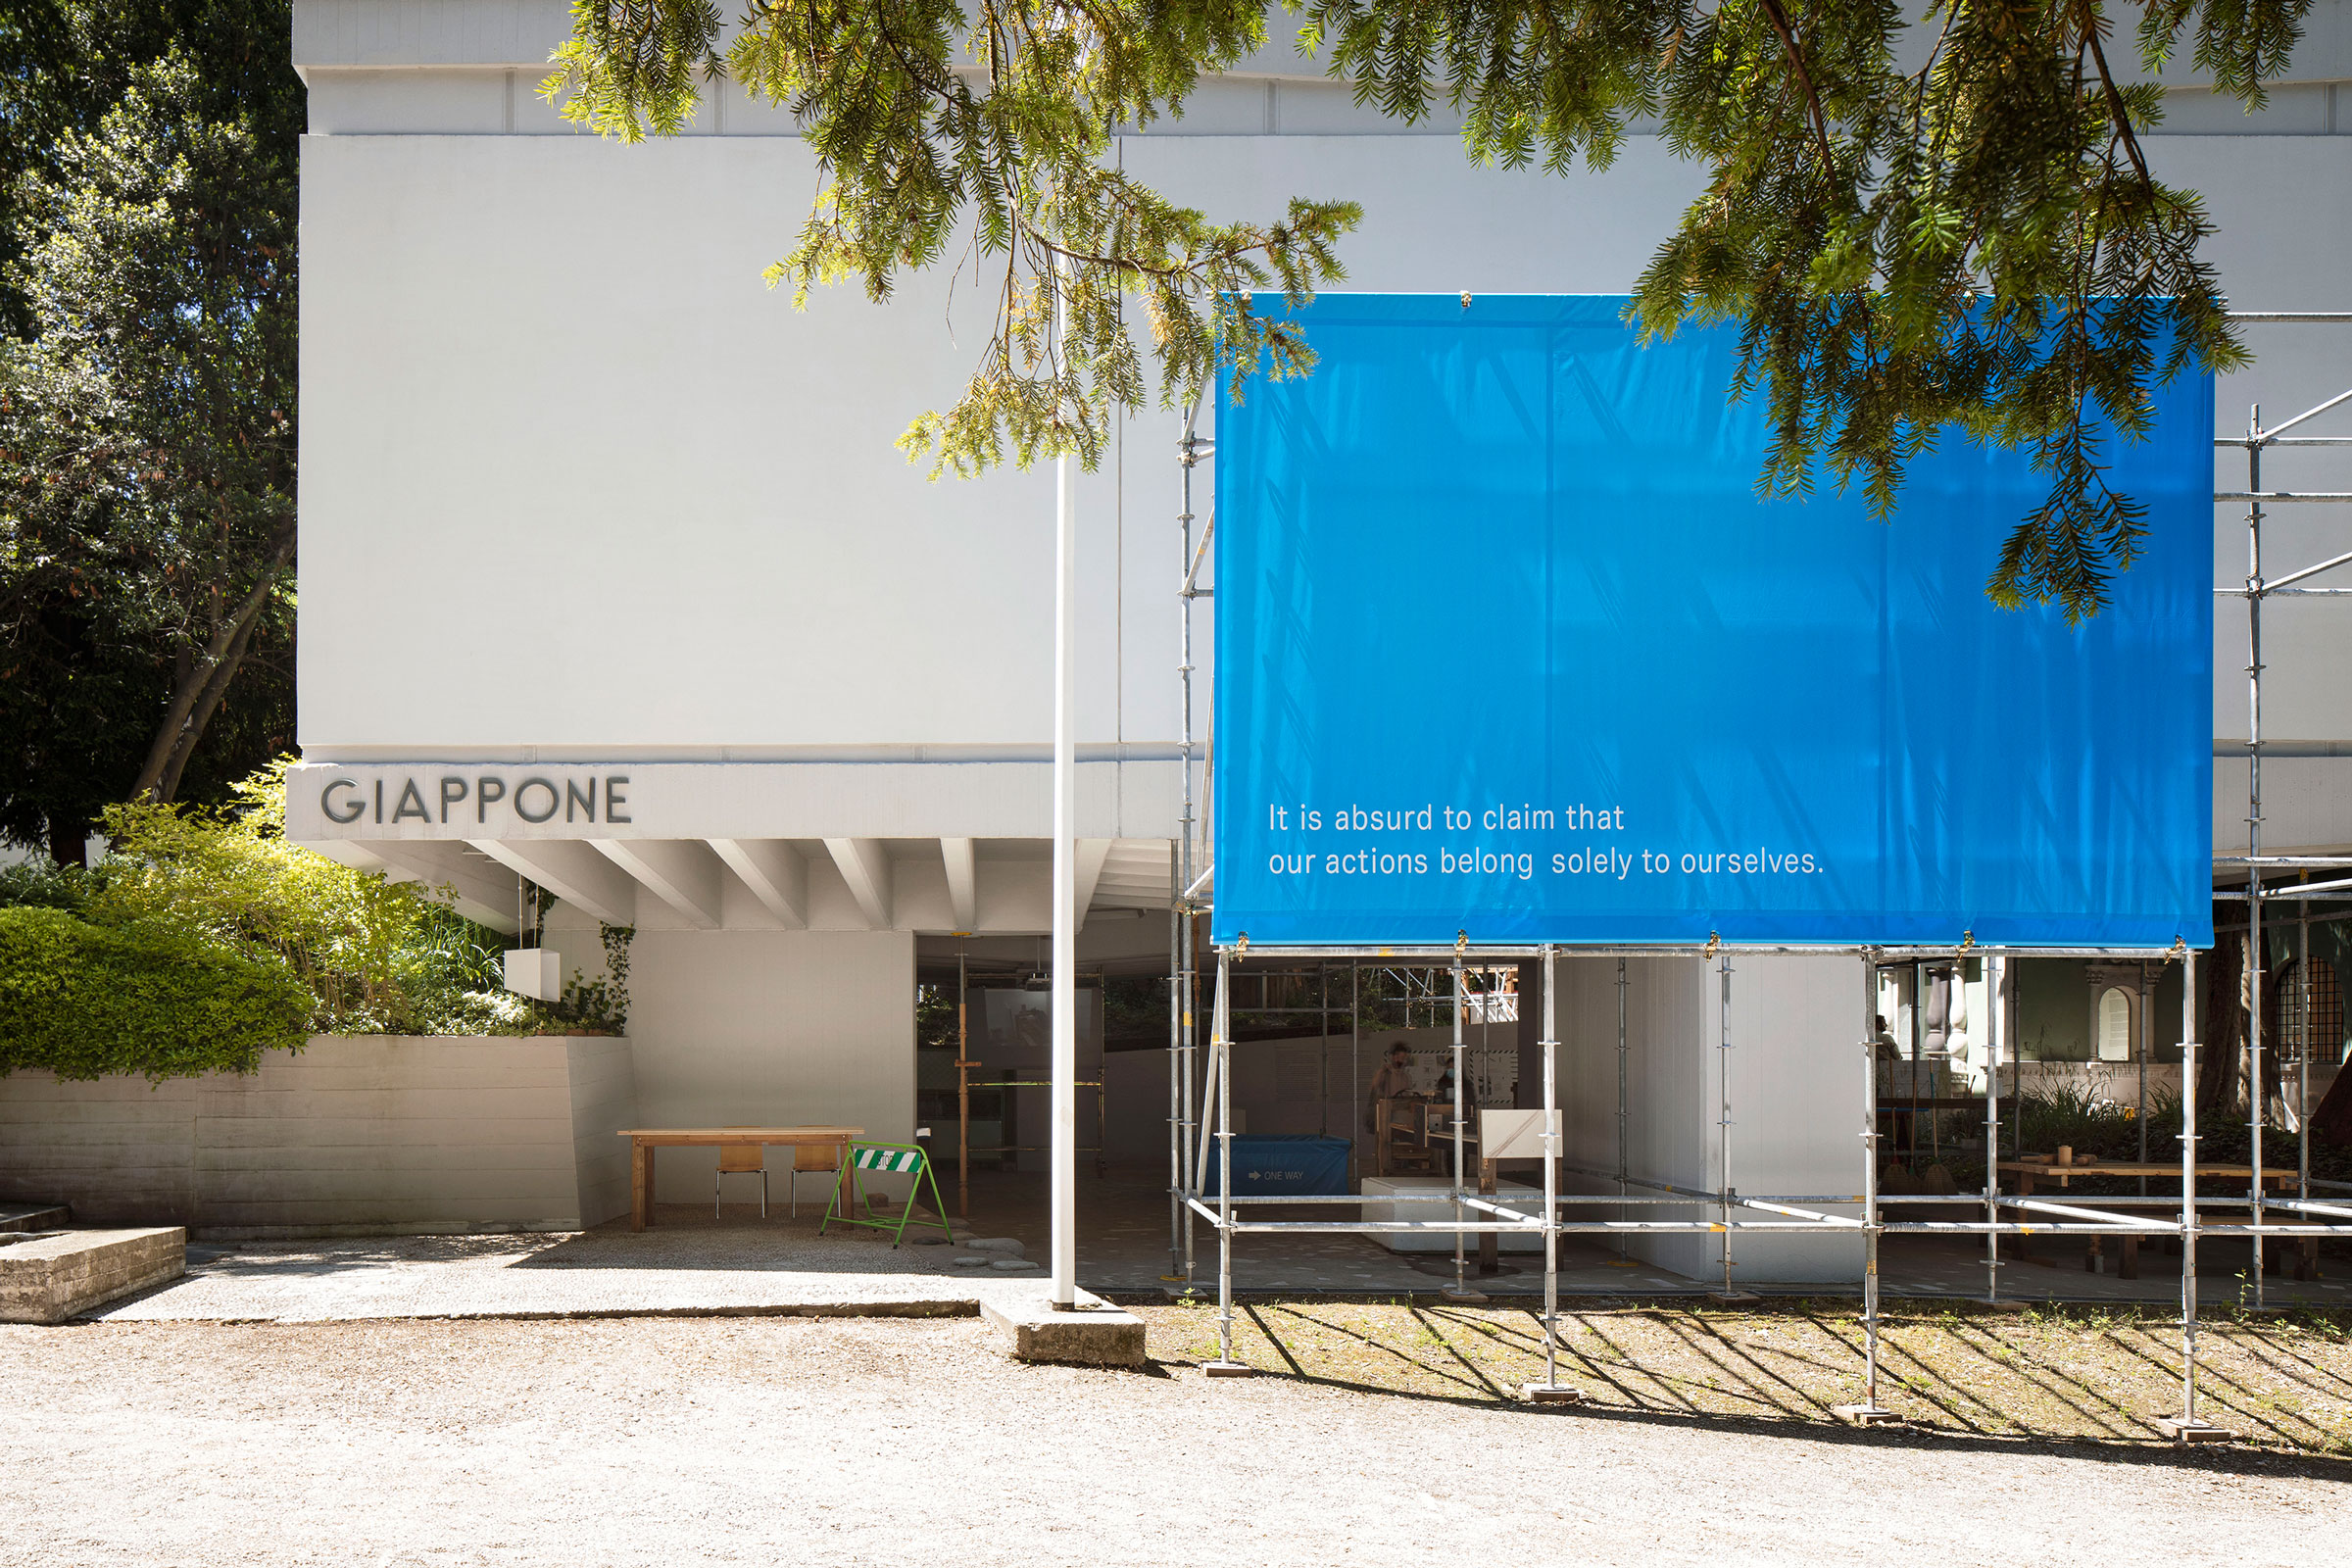 ヴェネチア・ビエンナーレ国際建築展日本館展示「ふるまいの連鎖 